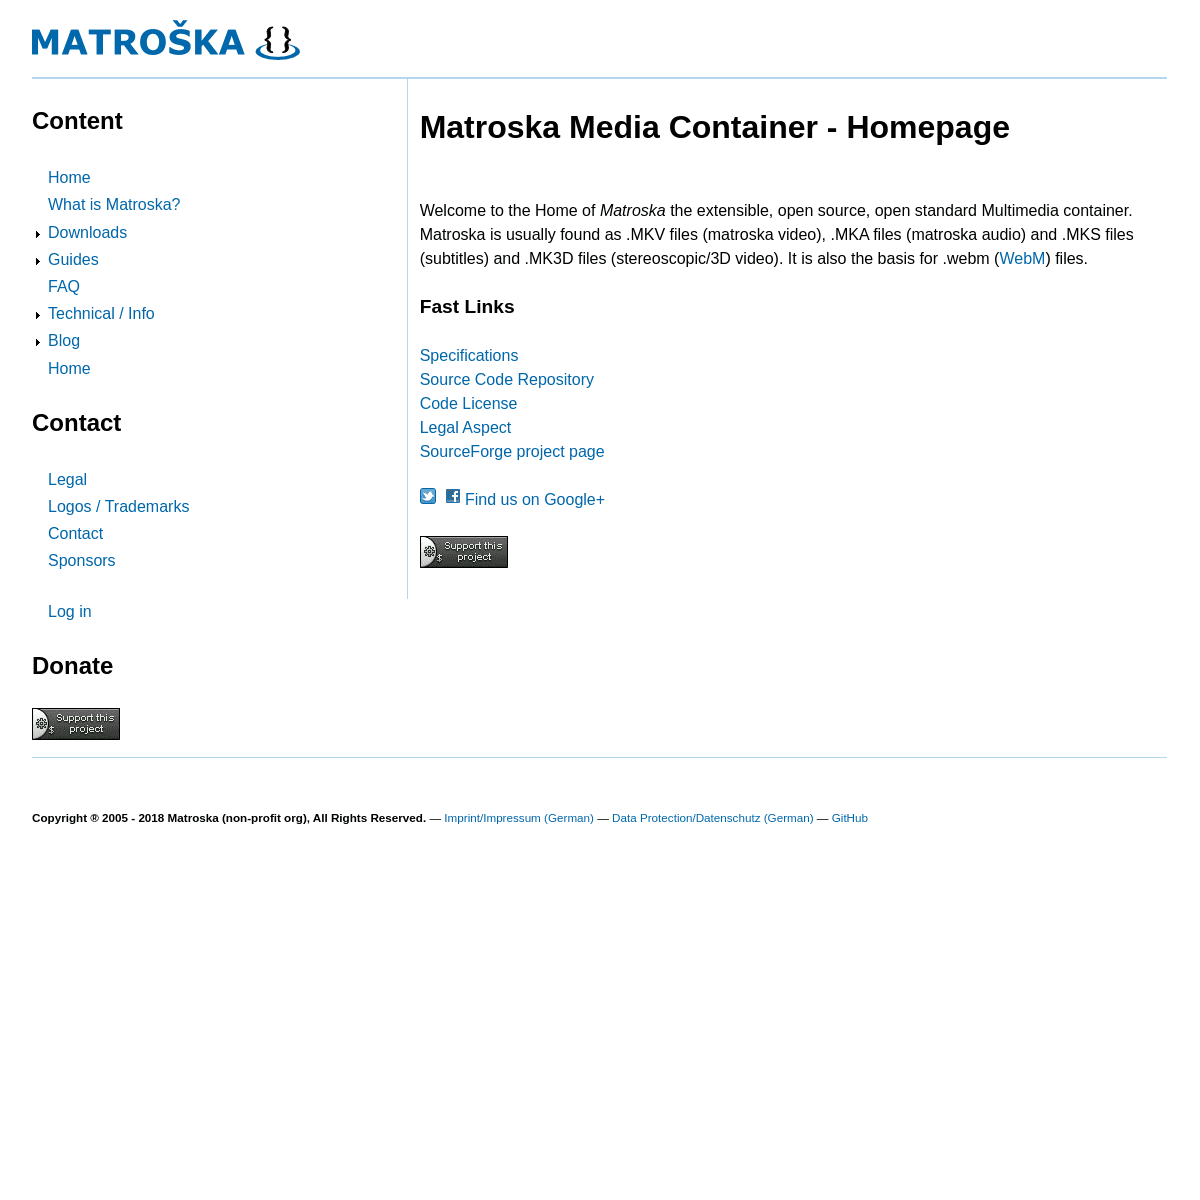 A complete backup of matroska.org